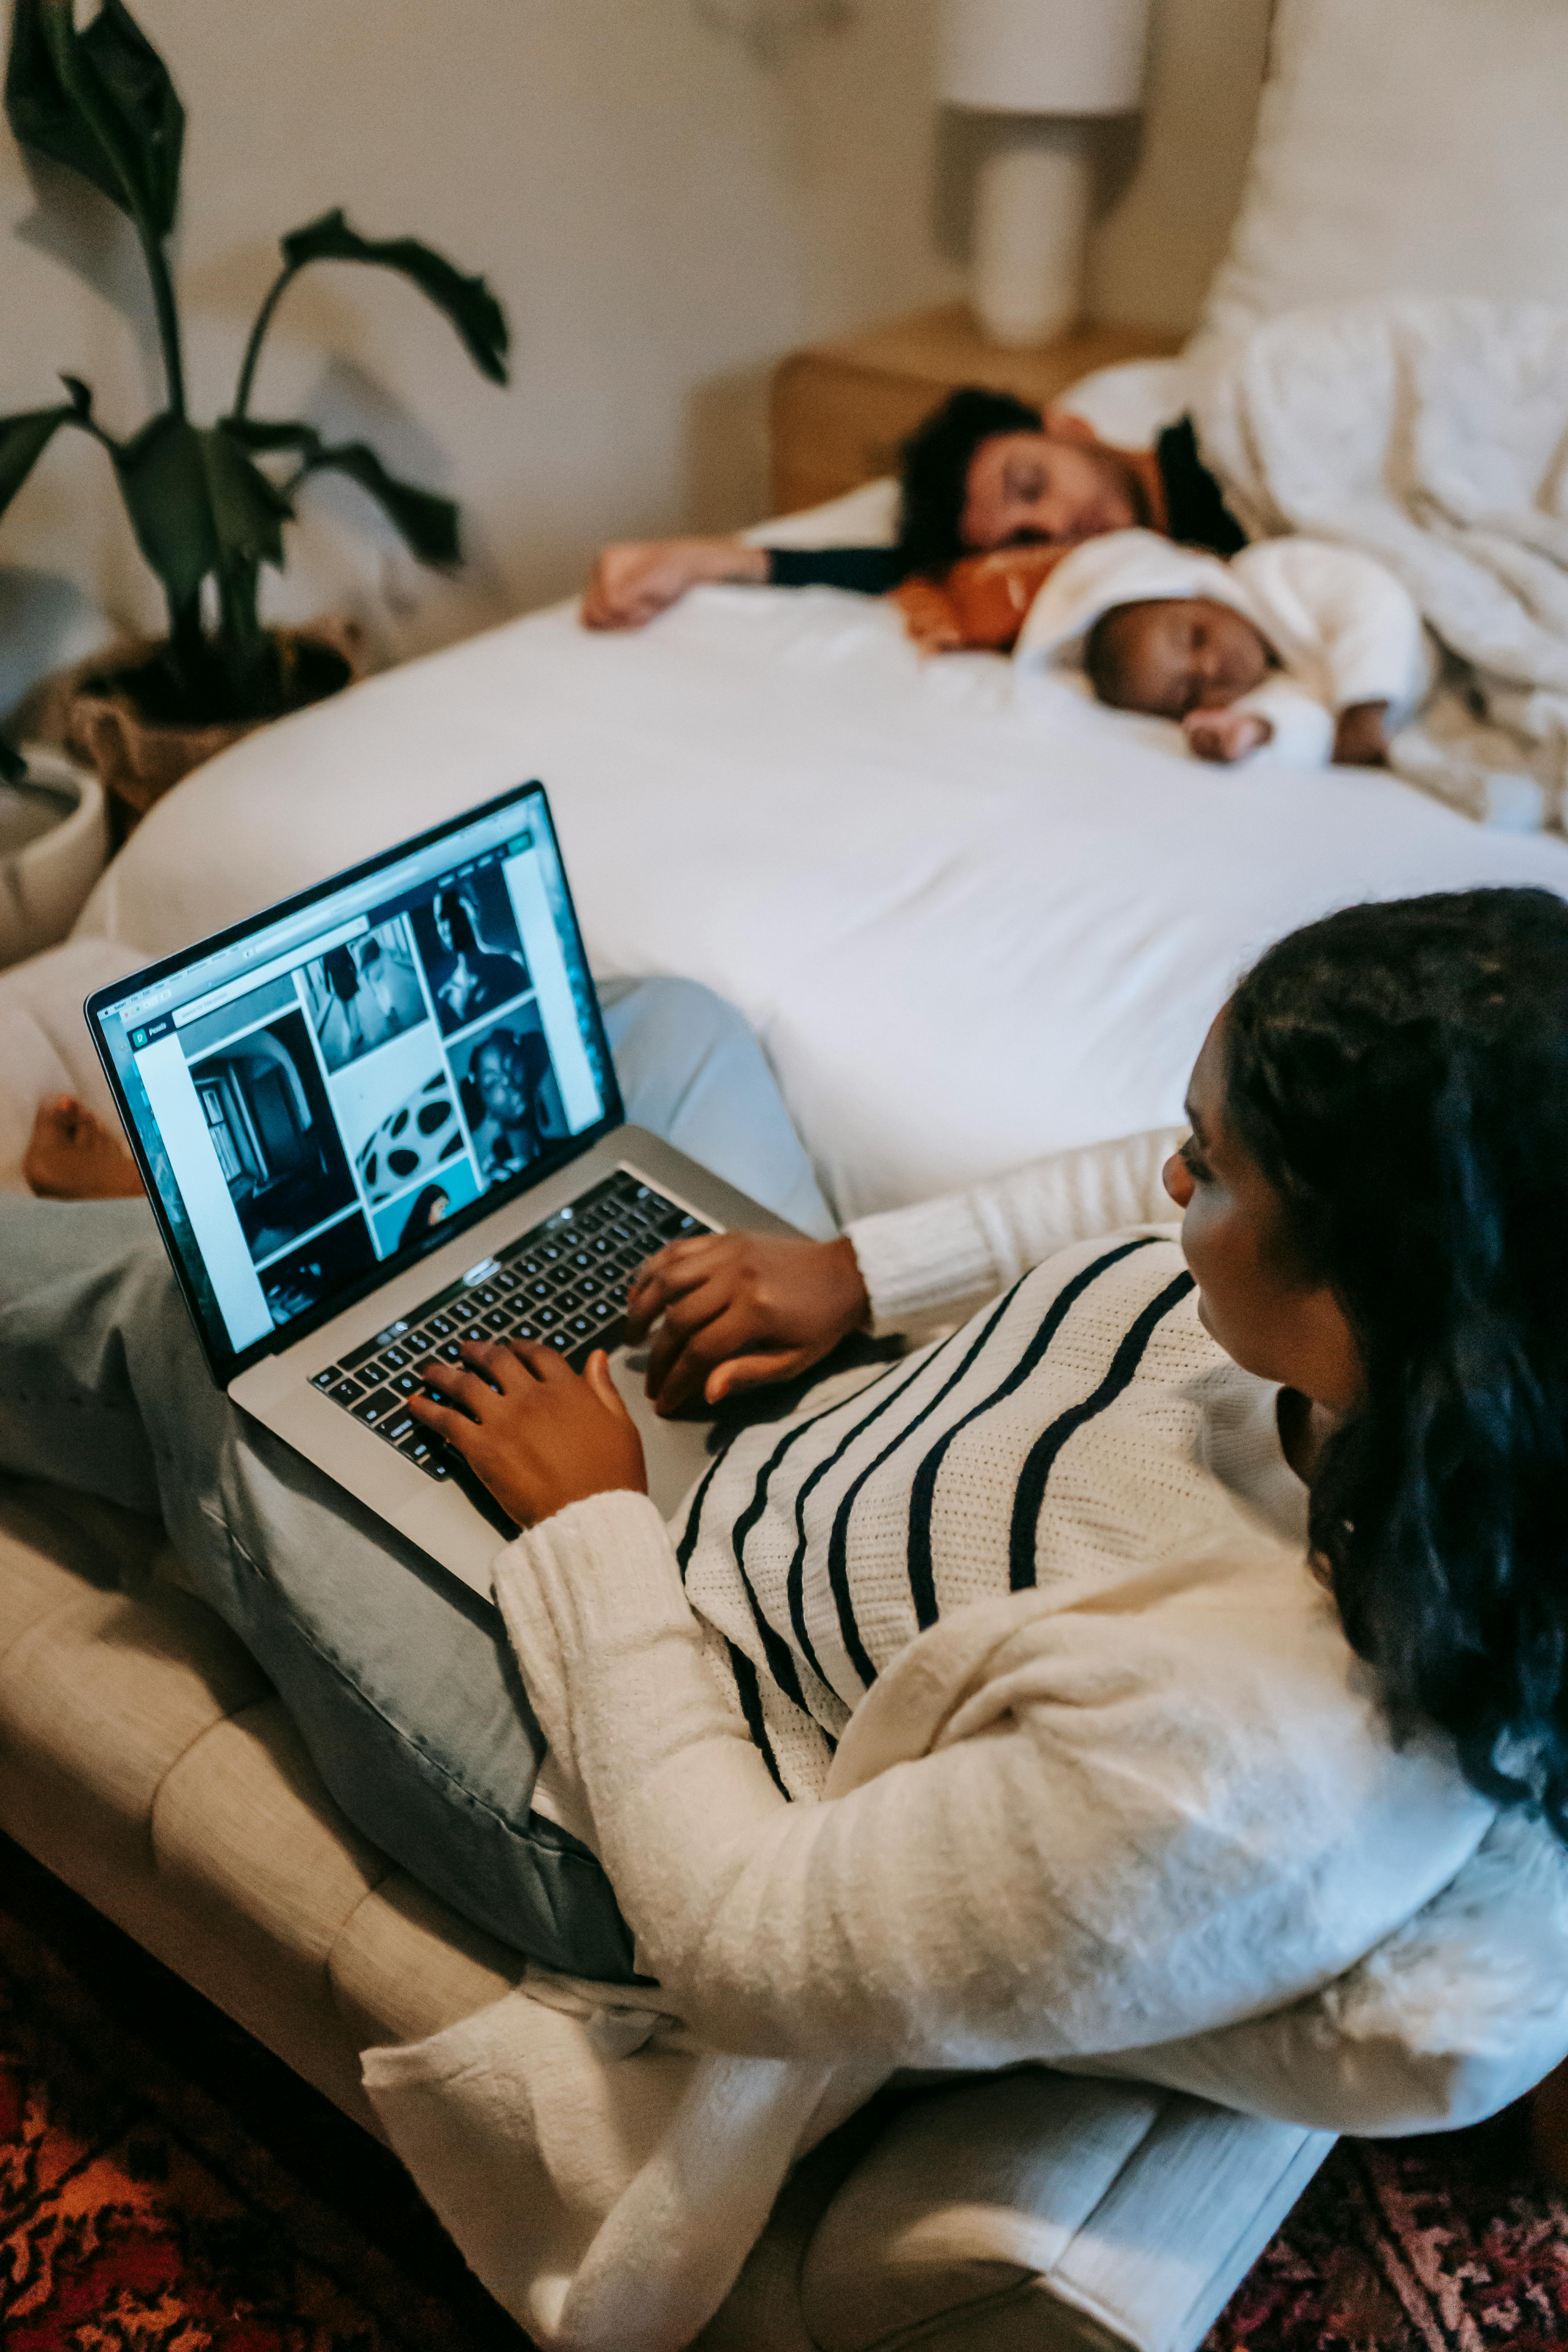 Une femme sur son ordinateur portable et sa famille qui dort sur le lit | Source : Pexels